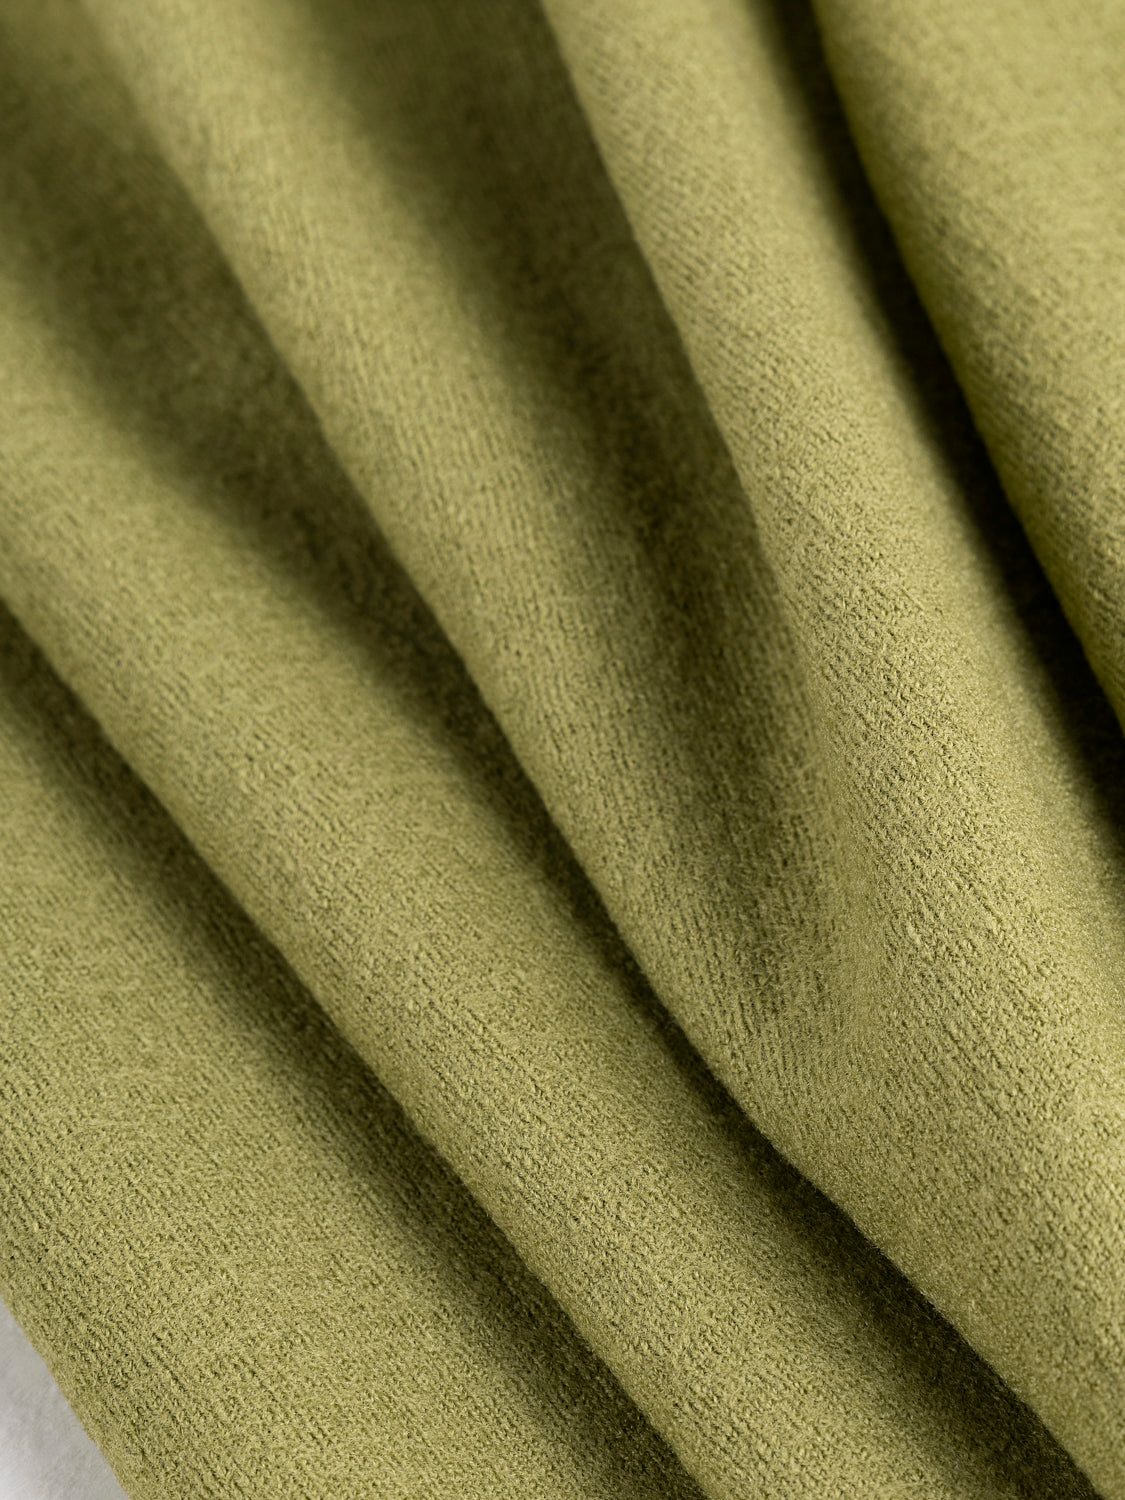 Boiled Wool Knit Deadstock - Moss | Core Fabrics